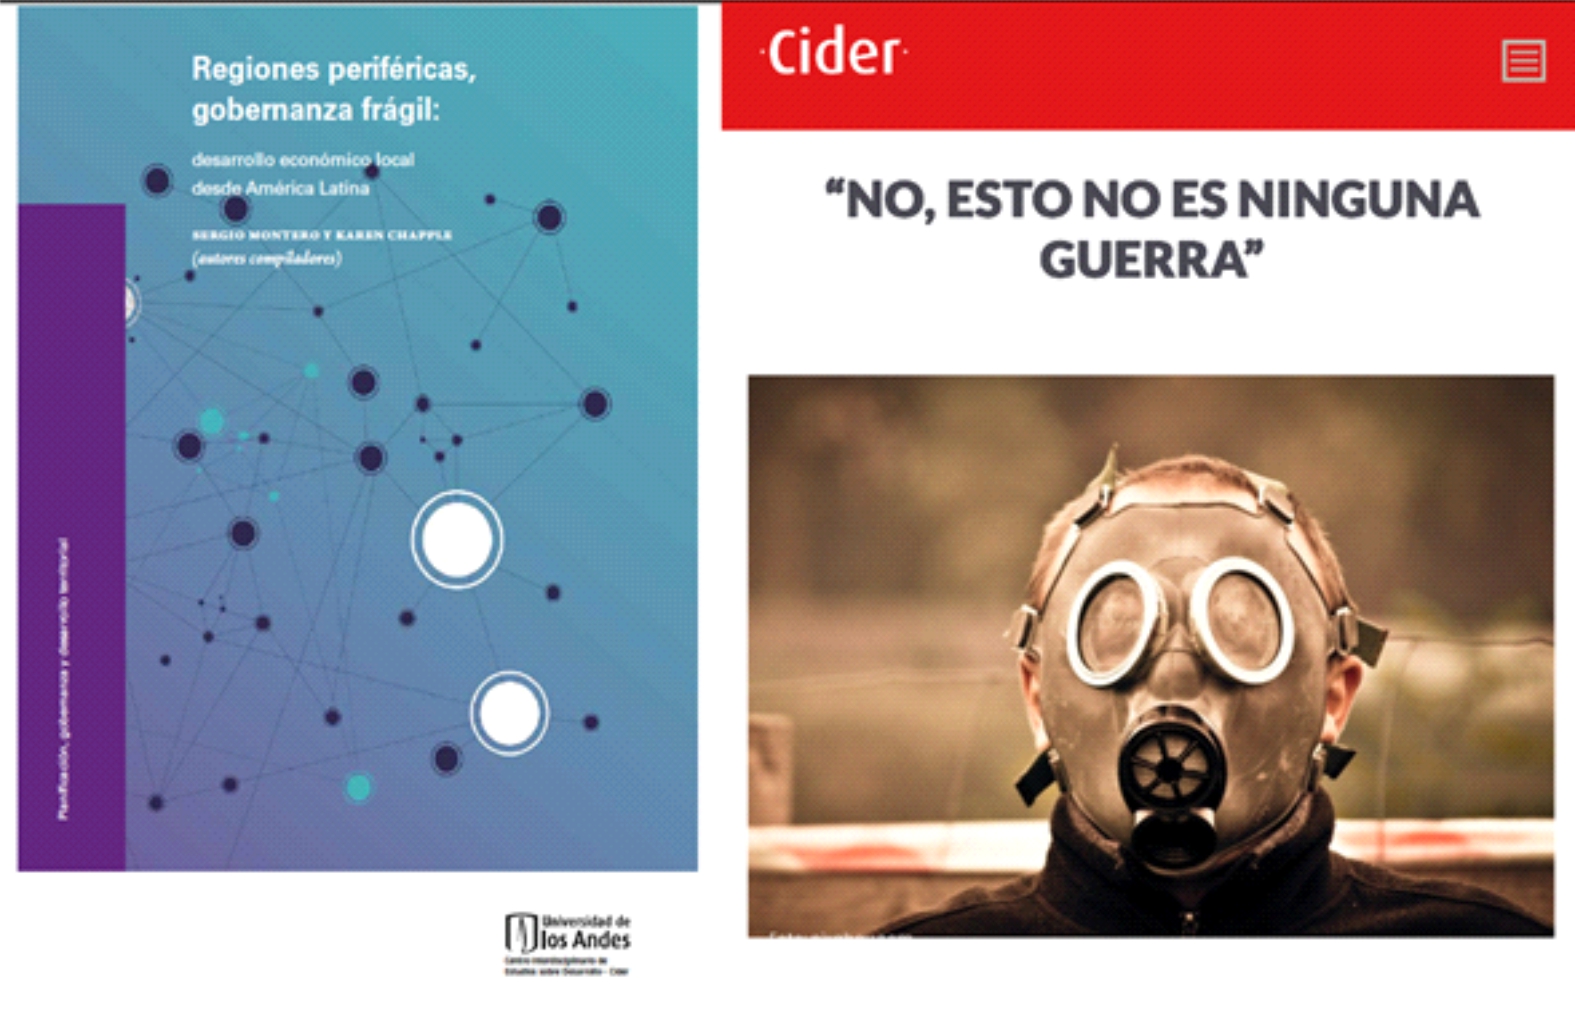 Sergio Montero: “Pensar y hablar de la actual crisis del COVID-19 en términos de cuidado y no de guerra” - Cider | Uniandes